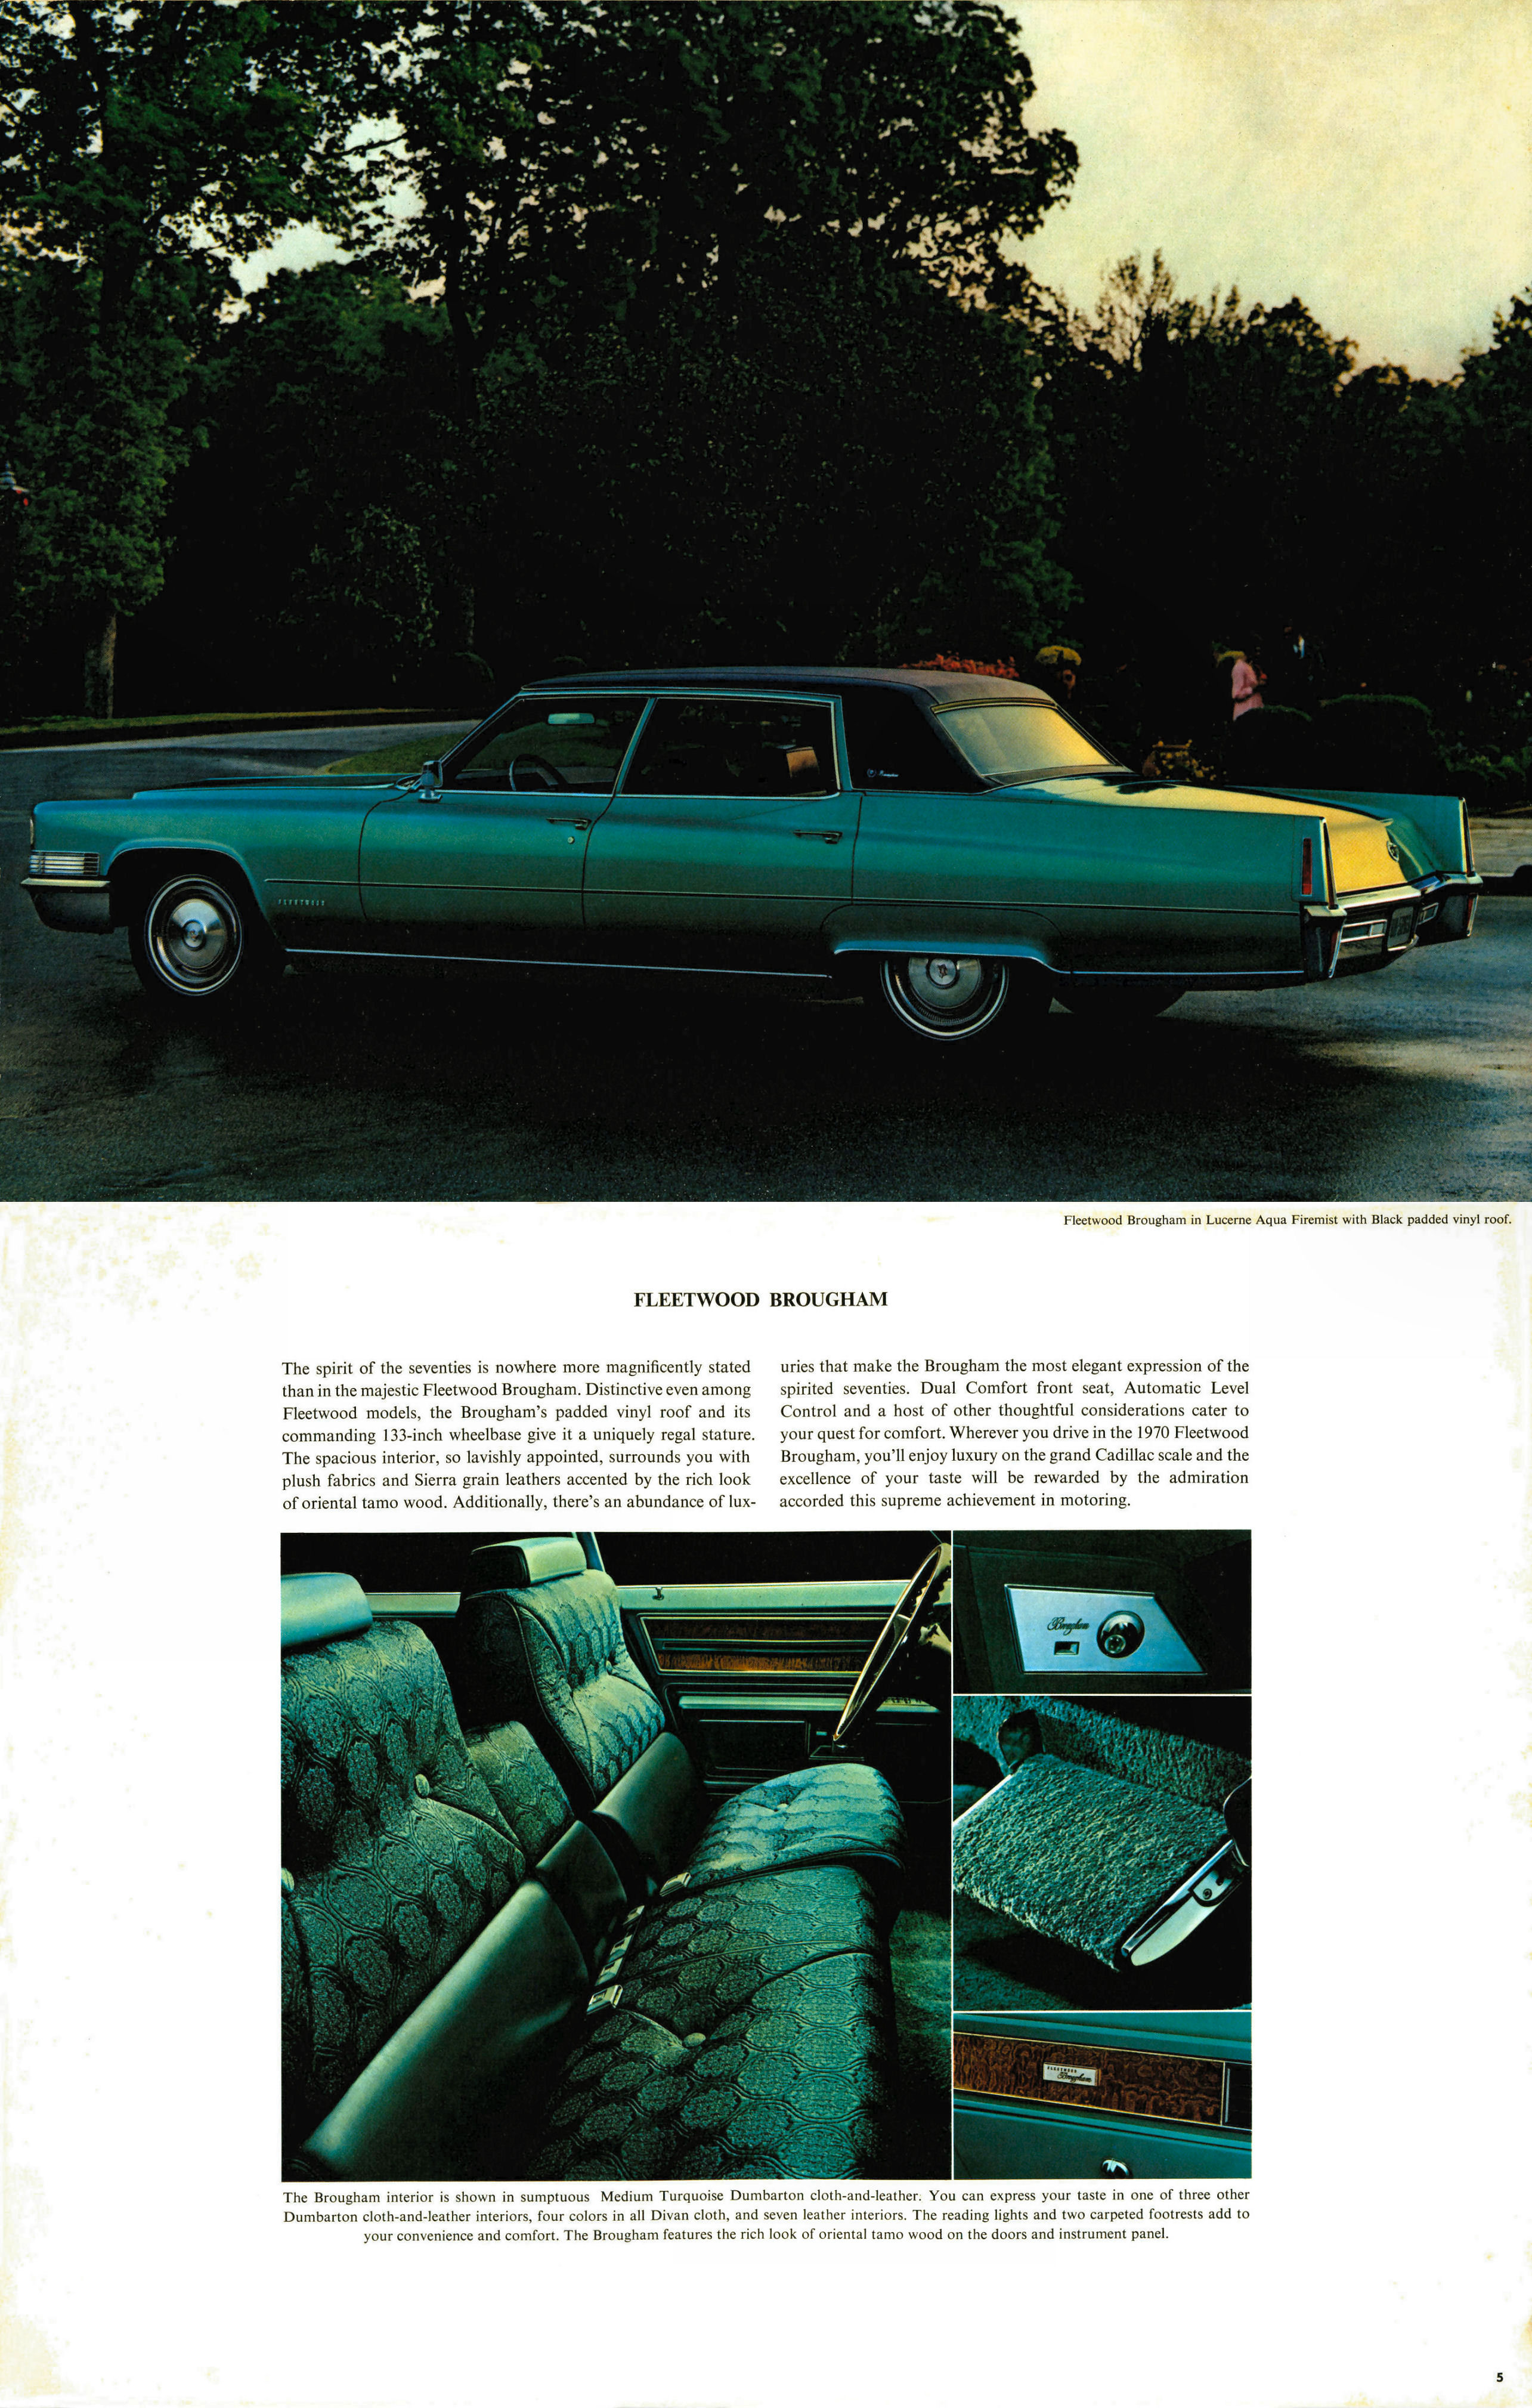 1970_Cadillac_Cdn-04-05